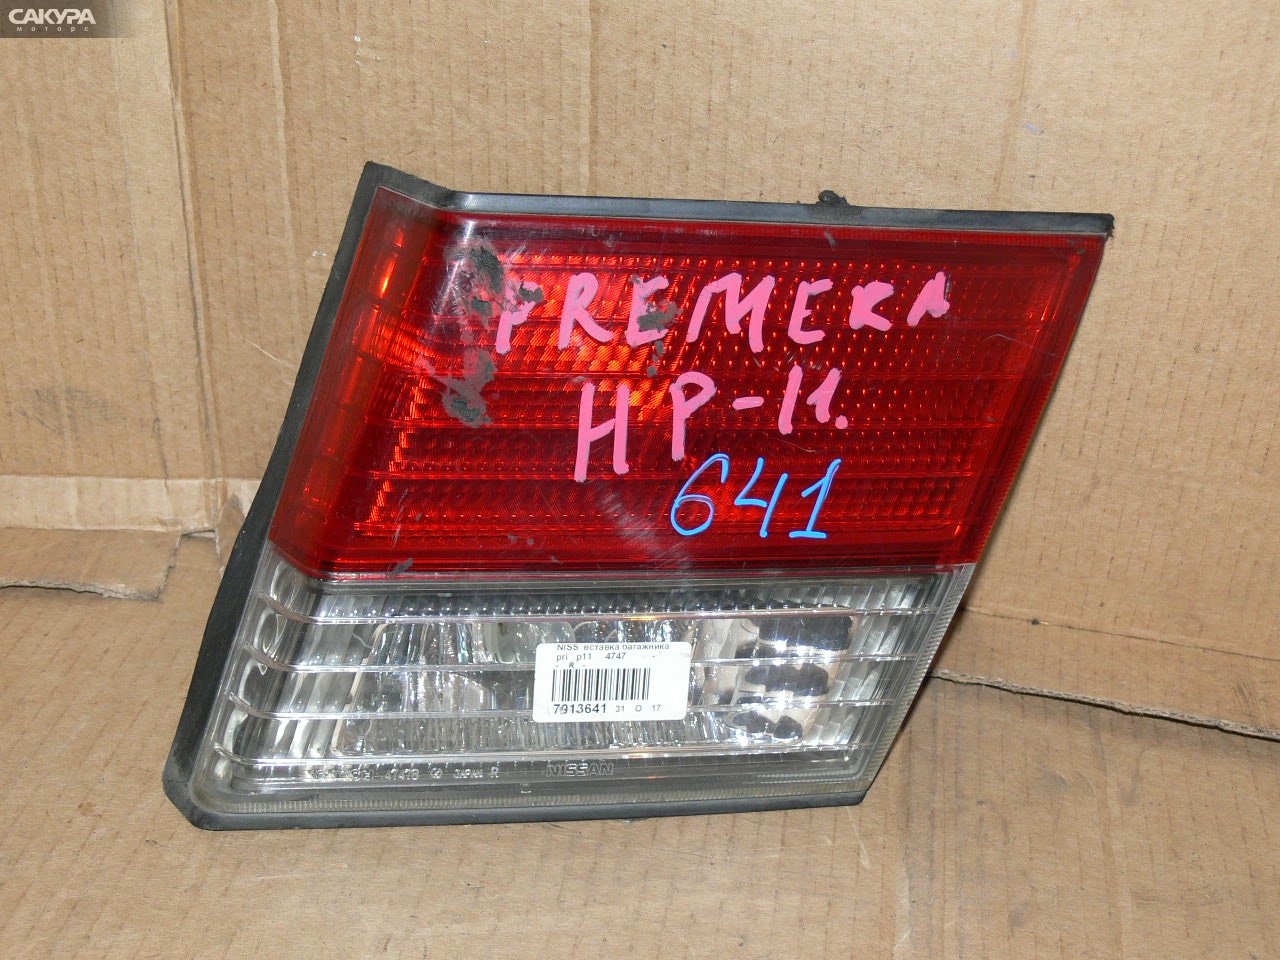 Фонарь вставка багажника правый Nissan Primera P11 4747: купить в Сакура Иркутск.